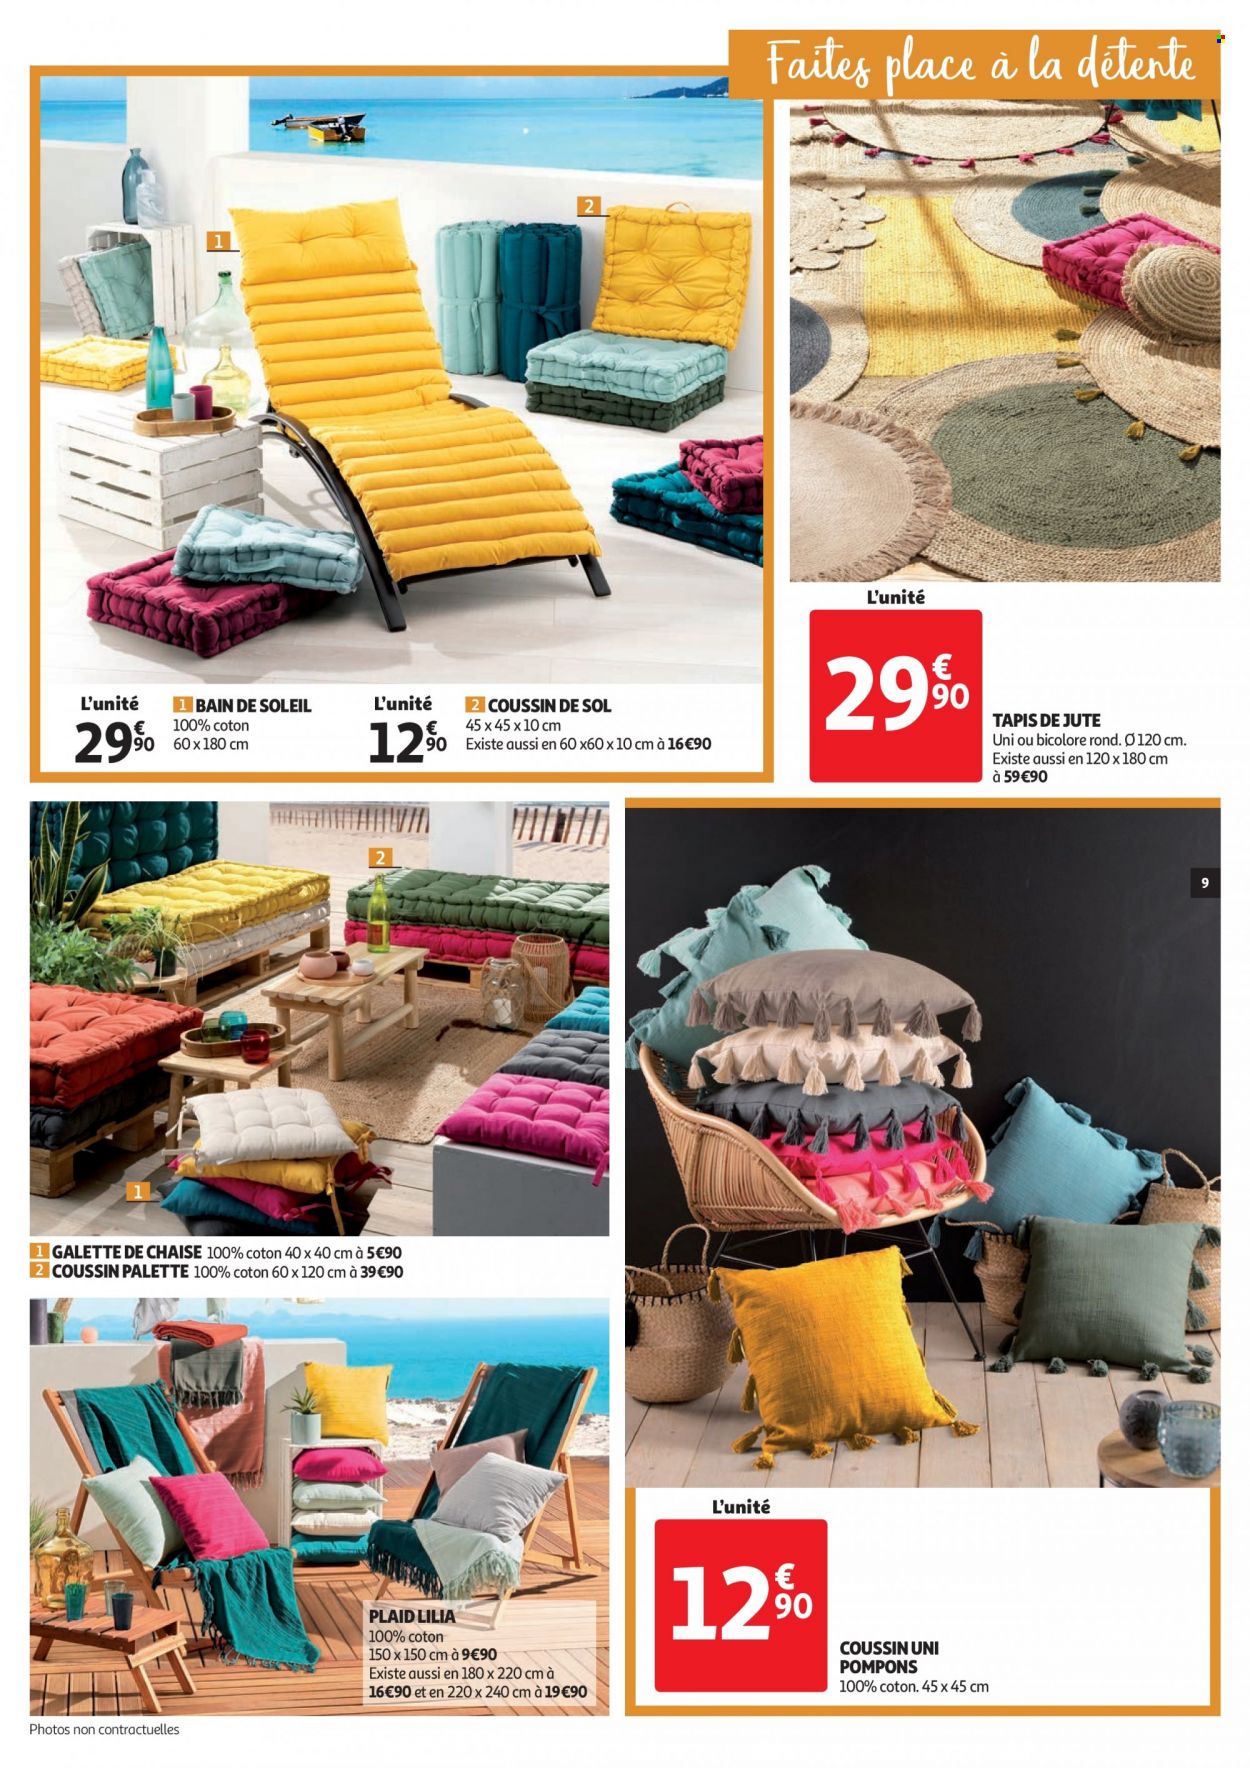 thumbnail - Catalogue Auchan - 06/07/2022 - 12/07/2022 - Produits soldés - galettes, Palette, galette de chaise, coussin, plaid, tapis, bain de soleil. Page 9.